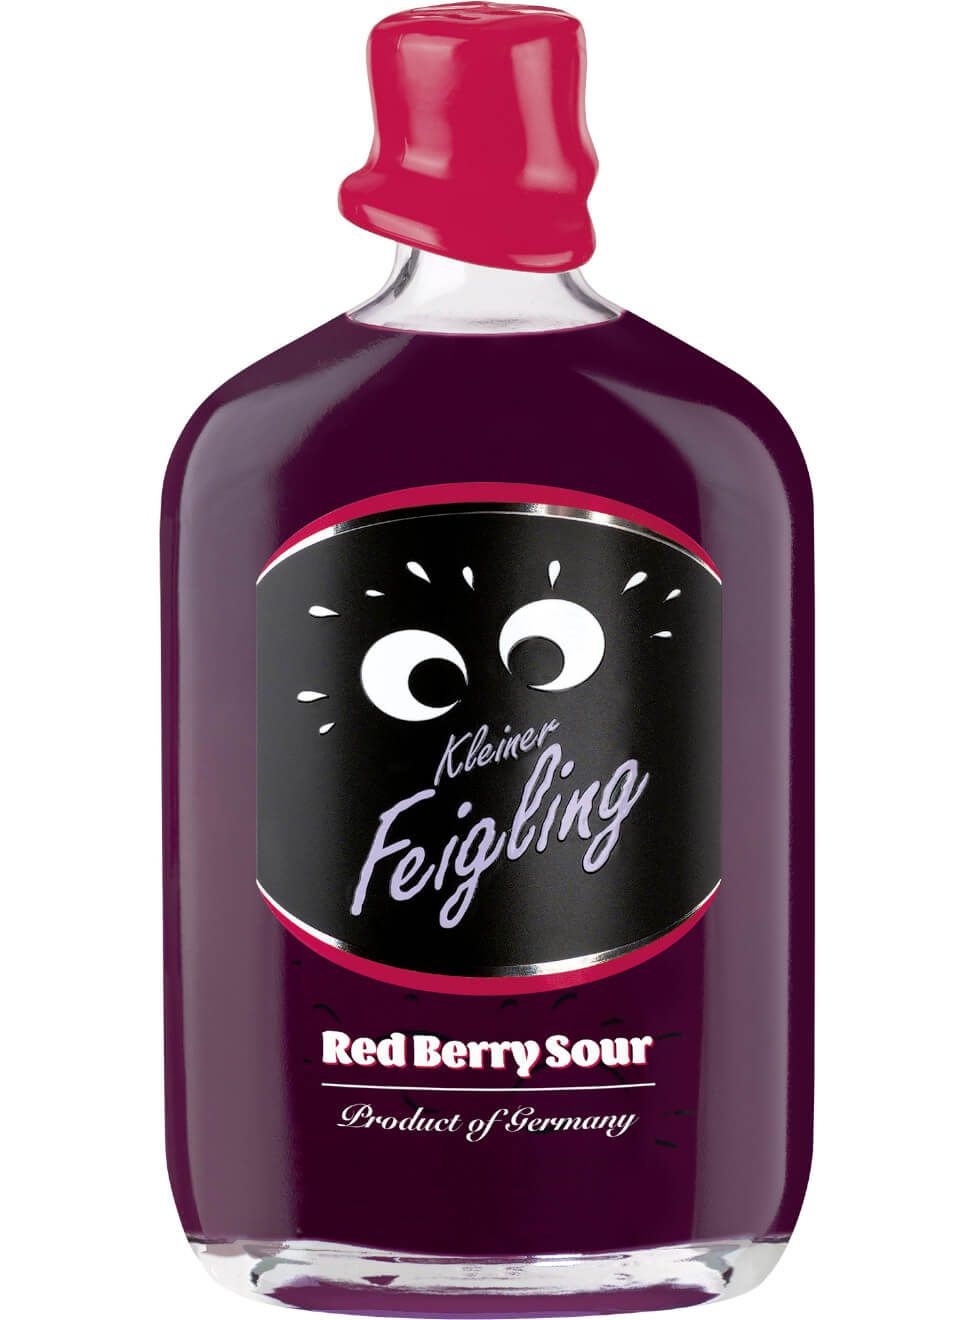 Kleiner Feigling Red Berry Sour 0,5 L günstig kaufen | Spirituosenworld.de  - Online Shop für Spirituosen und Barzubehör